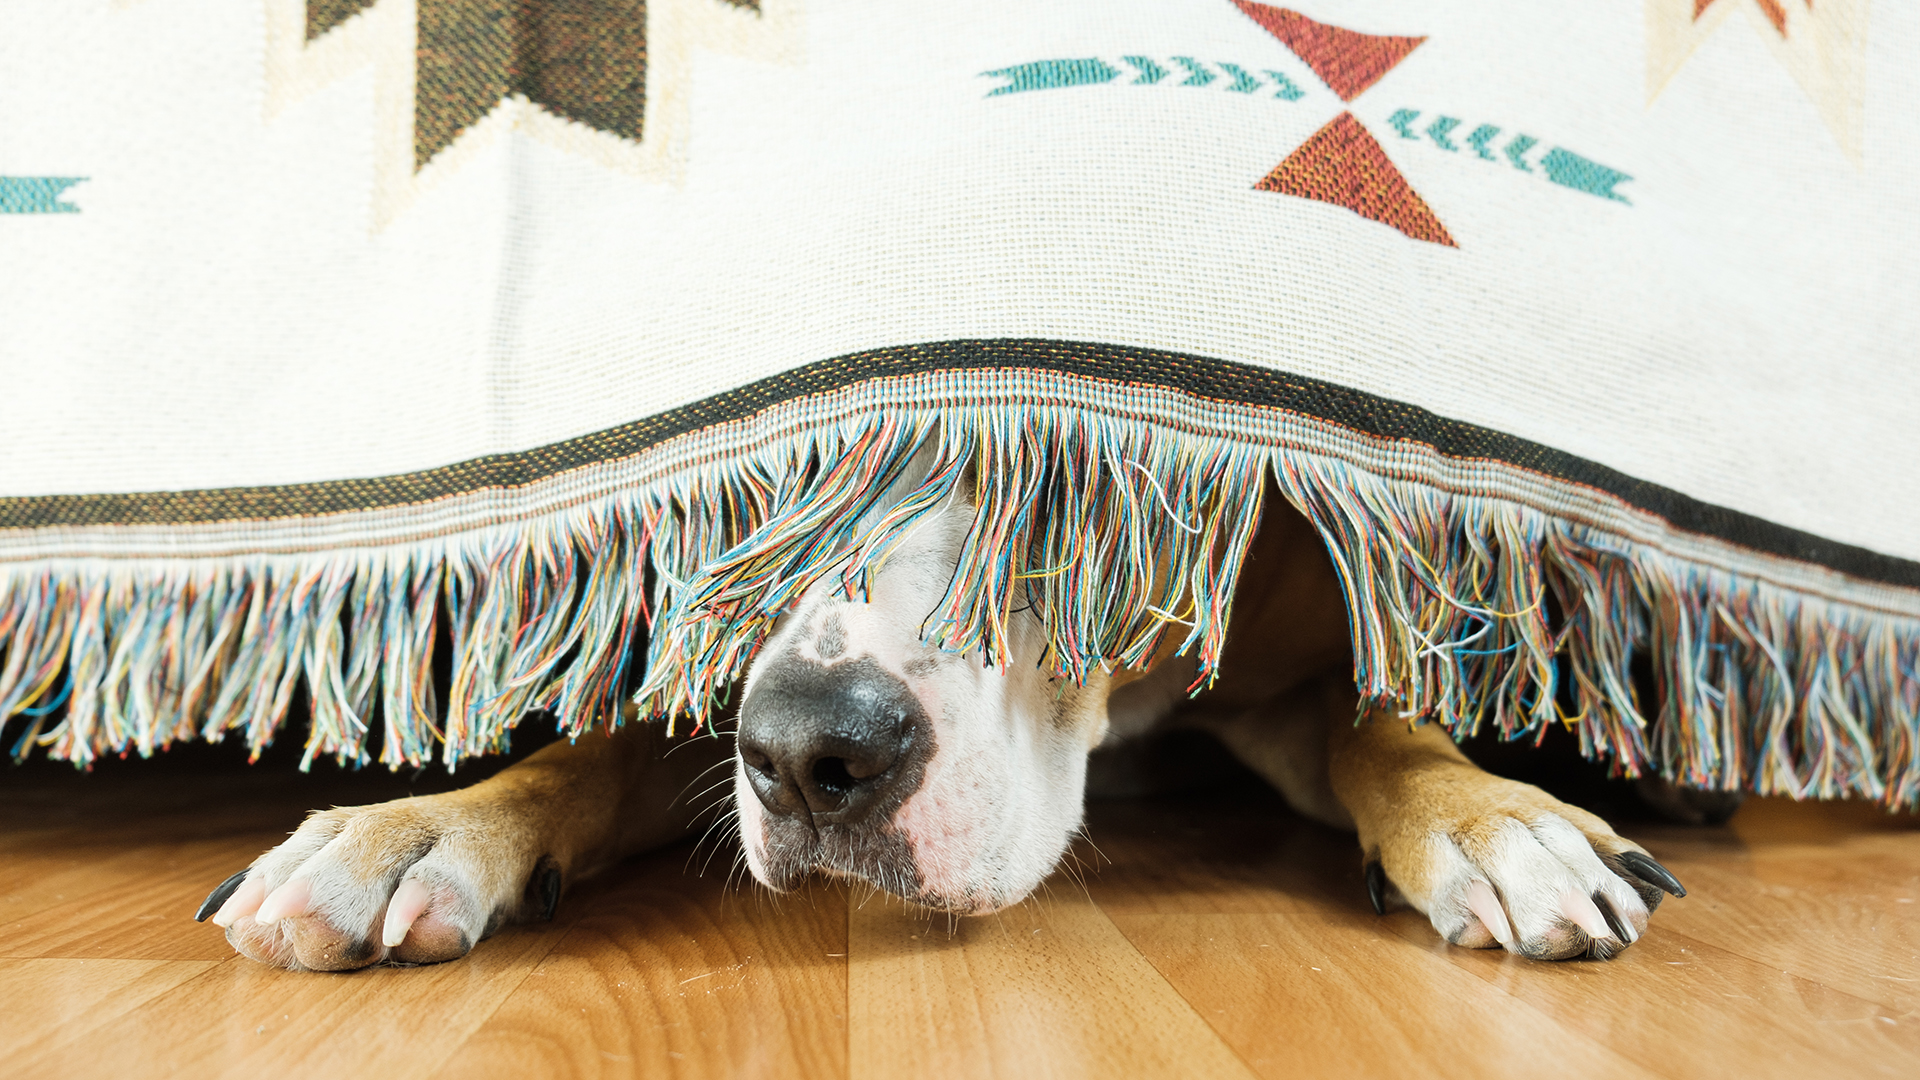 Los ruidos significan más intensidad y molestias para las mascotas
 (Shutterstock)